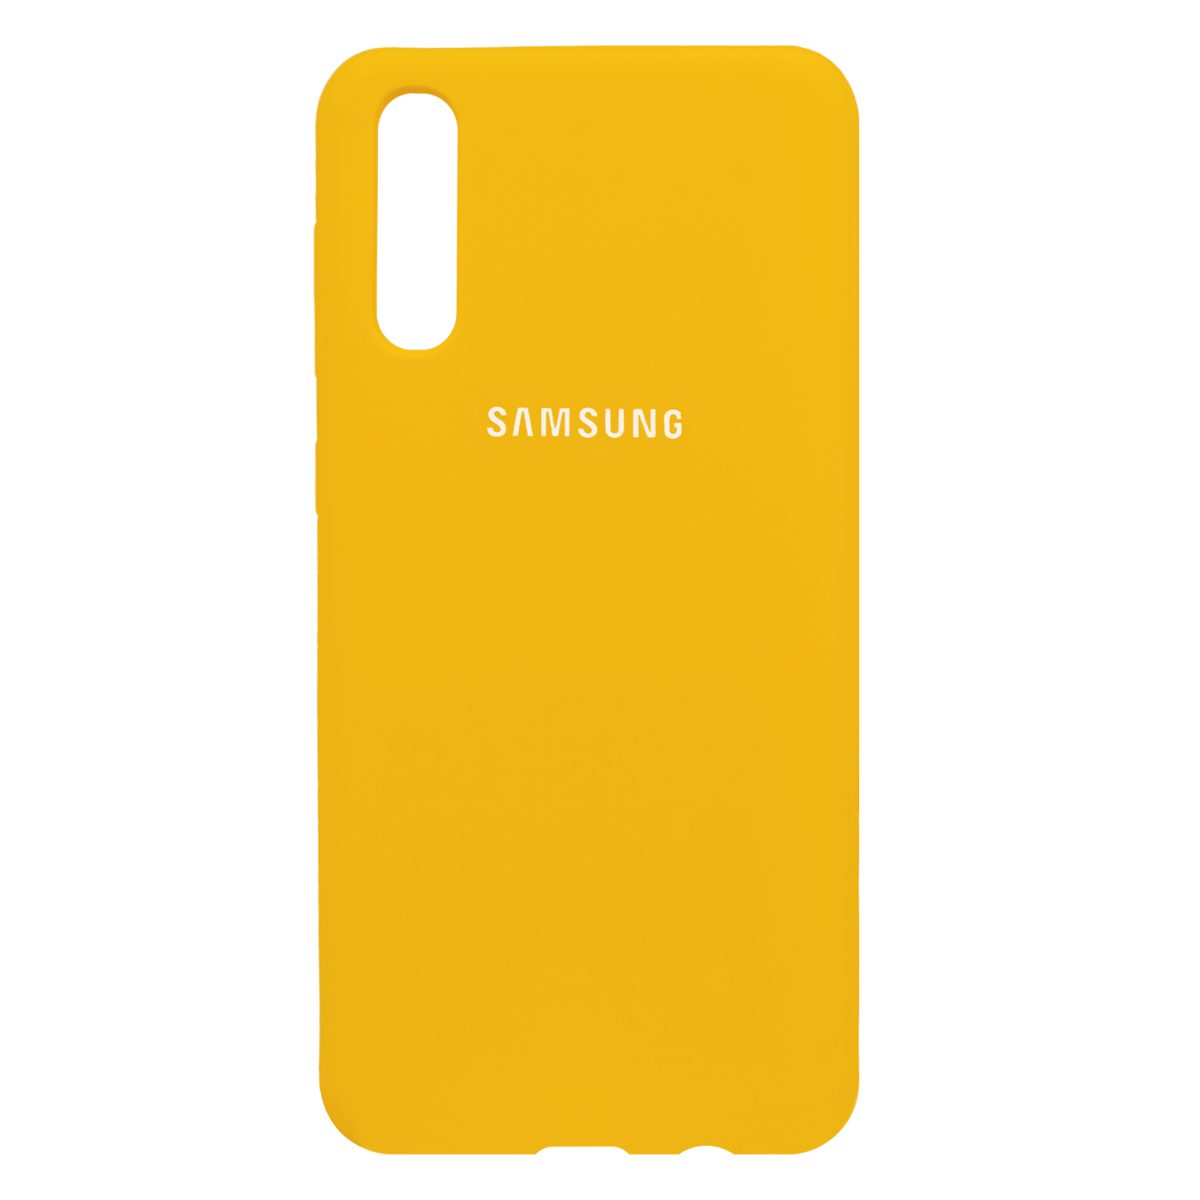 کاور سیلیکونی زرد مدل Shape مناسب برای گوشی موبایل سامسونگ Galaxy A30, A50s